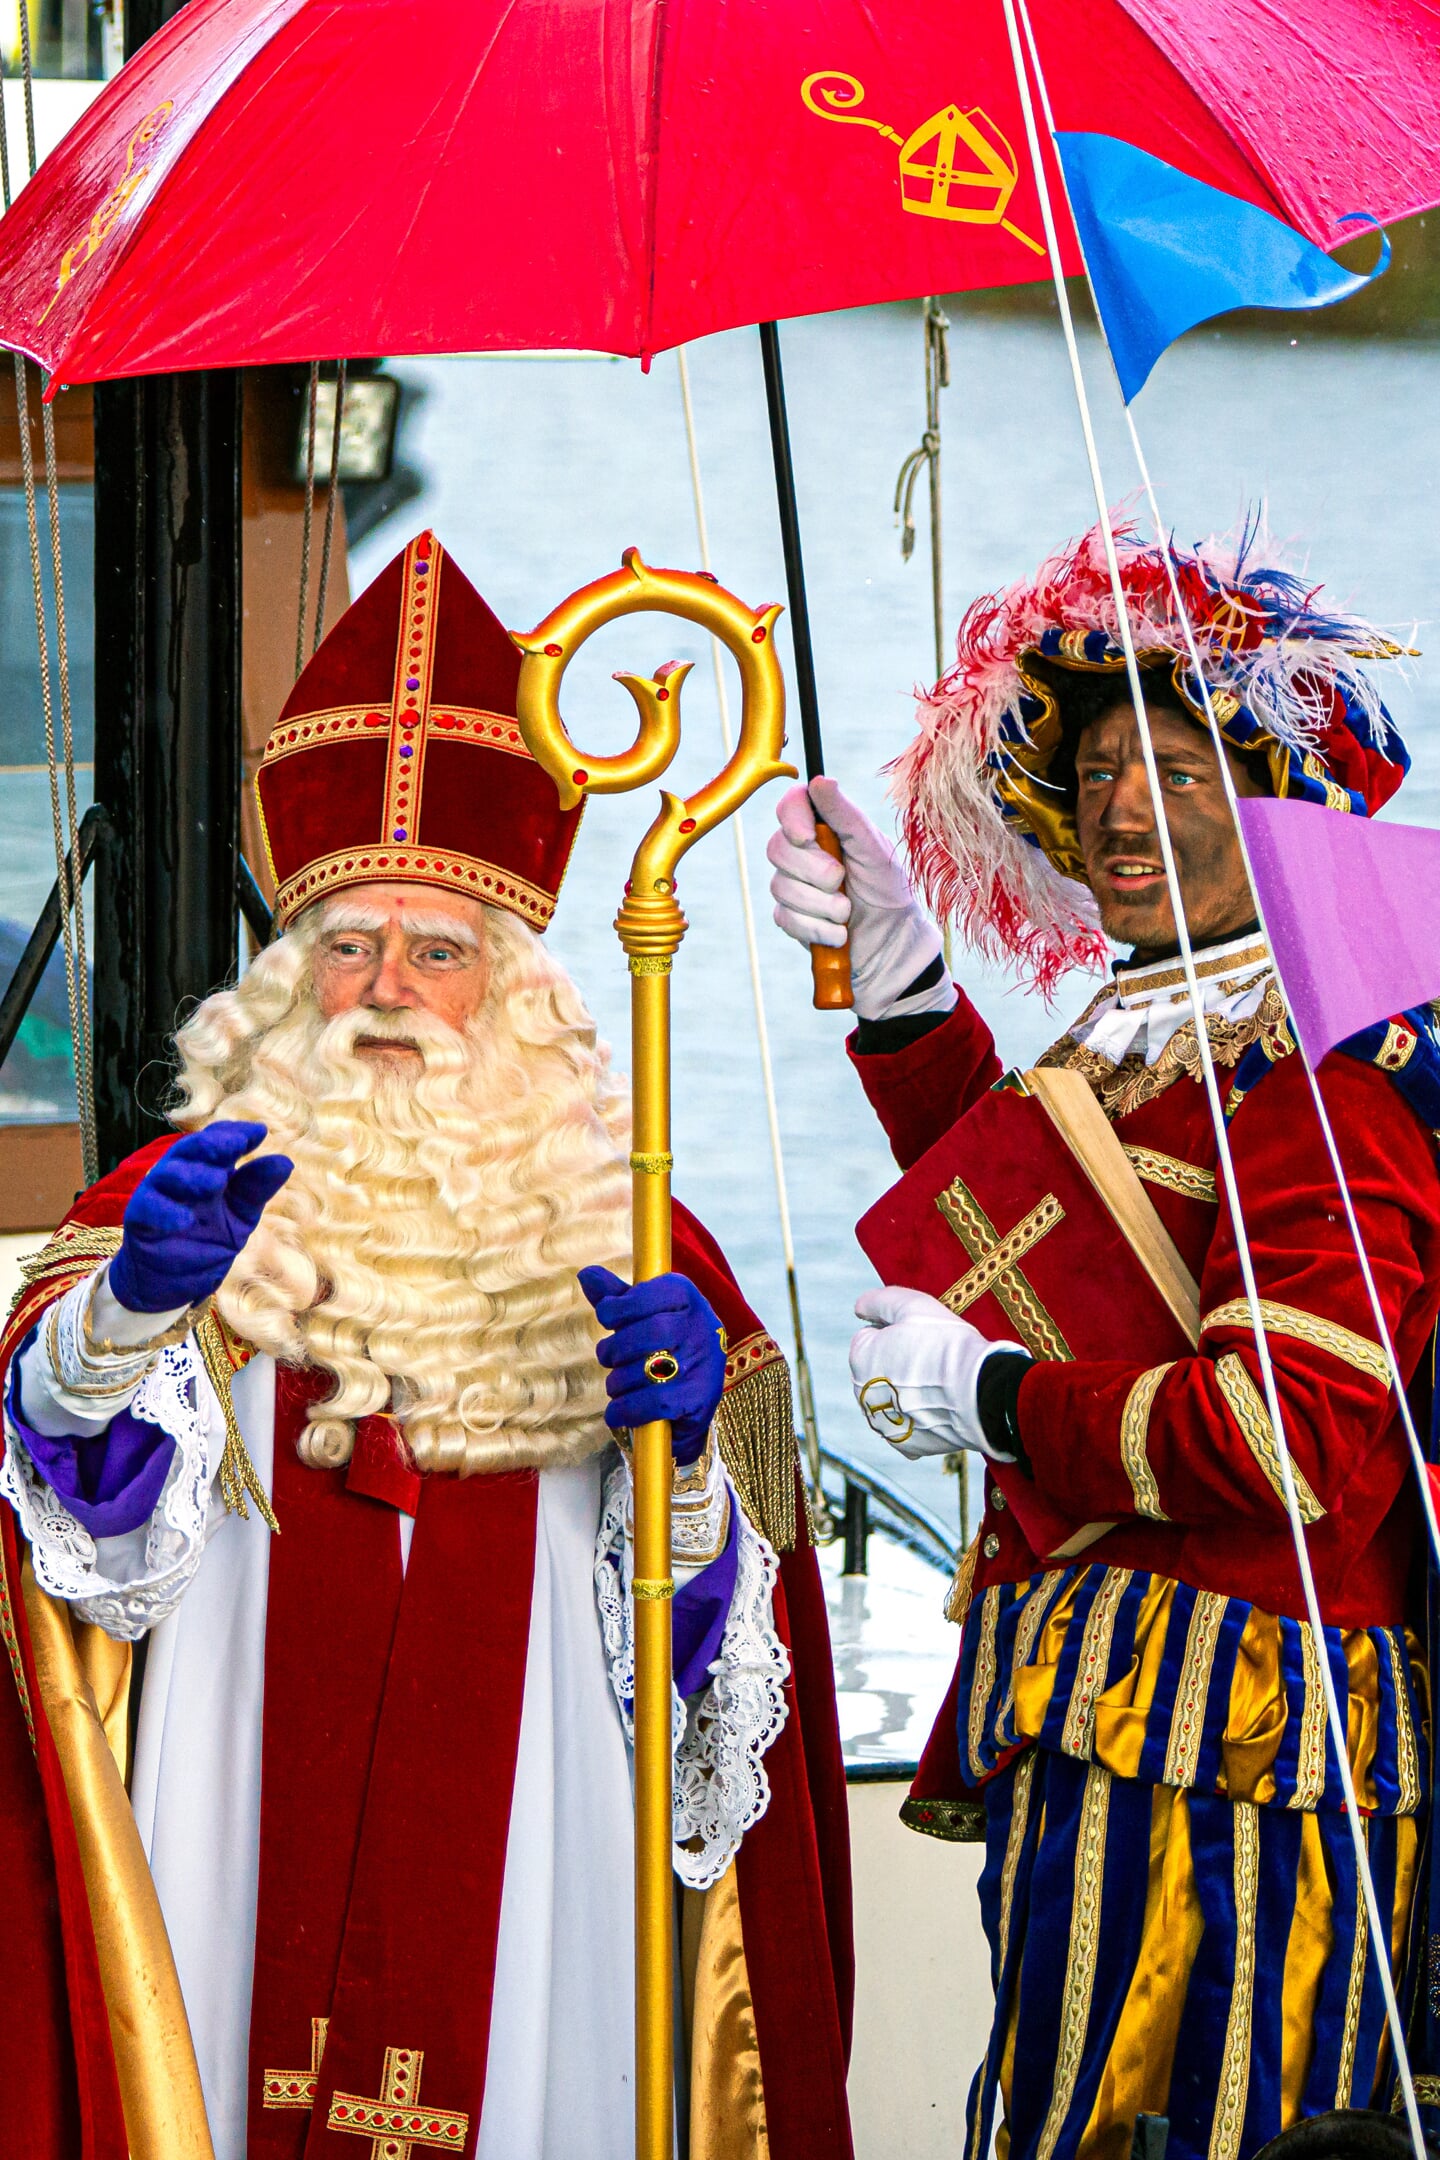 Aankomst Sinterklaas in Vianen